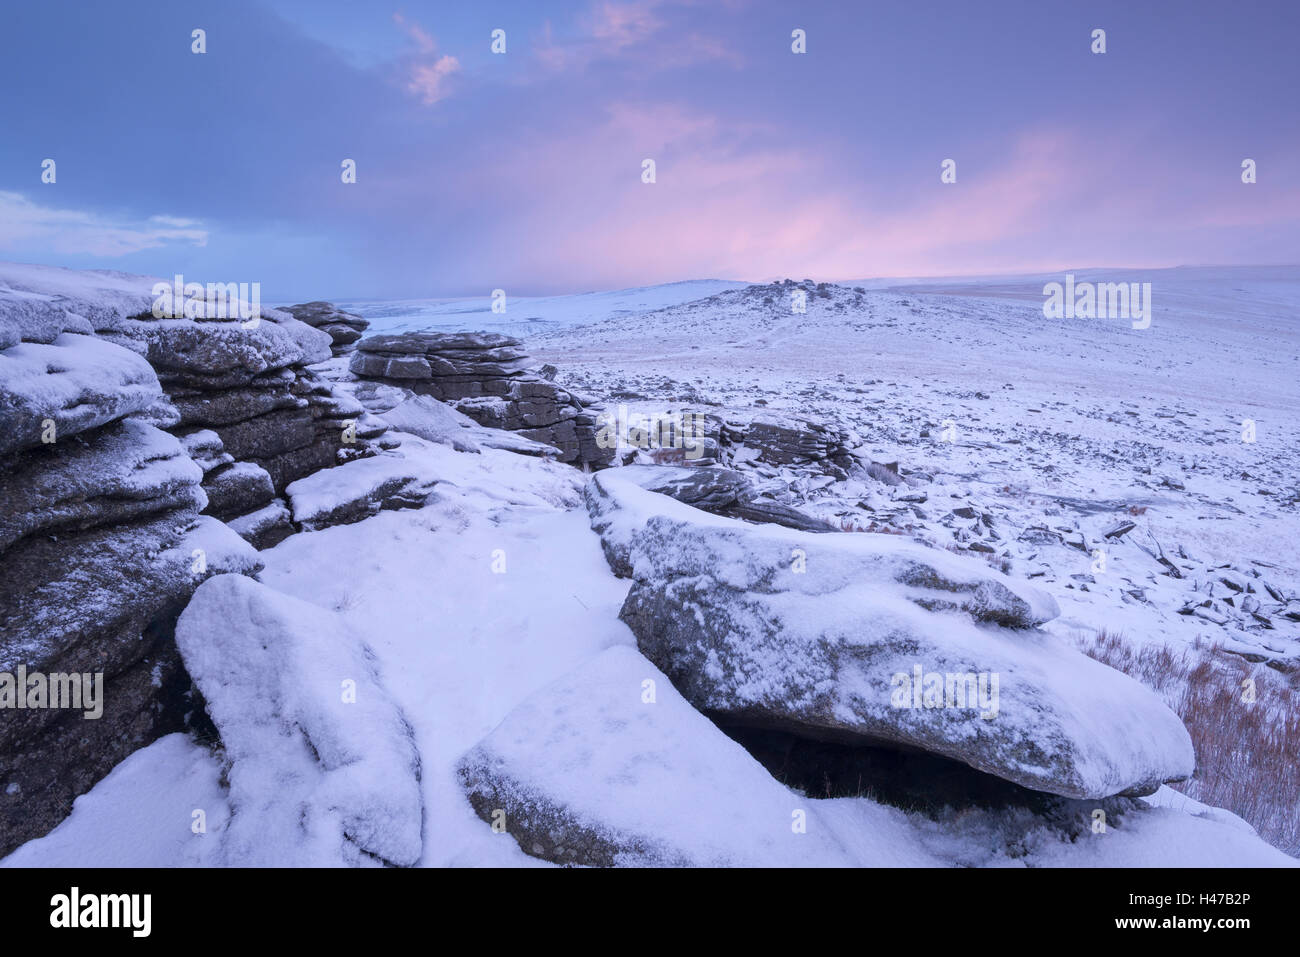 L'aube apparaît sur une lande couverte de neige, Grand Tor discontinues, Dartmoor National Park, Devon, Angleterre. L'hiver (Janvier) 2015. Banque D'Images